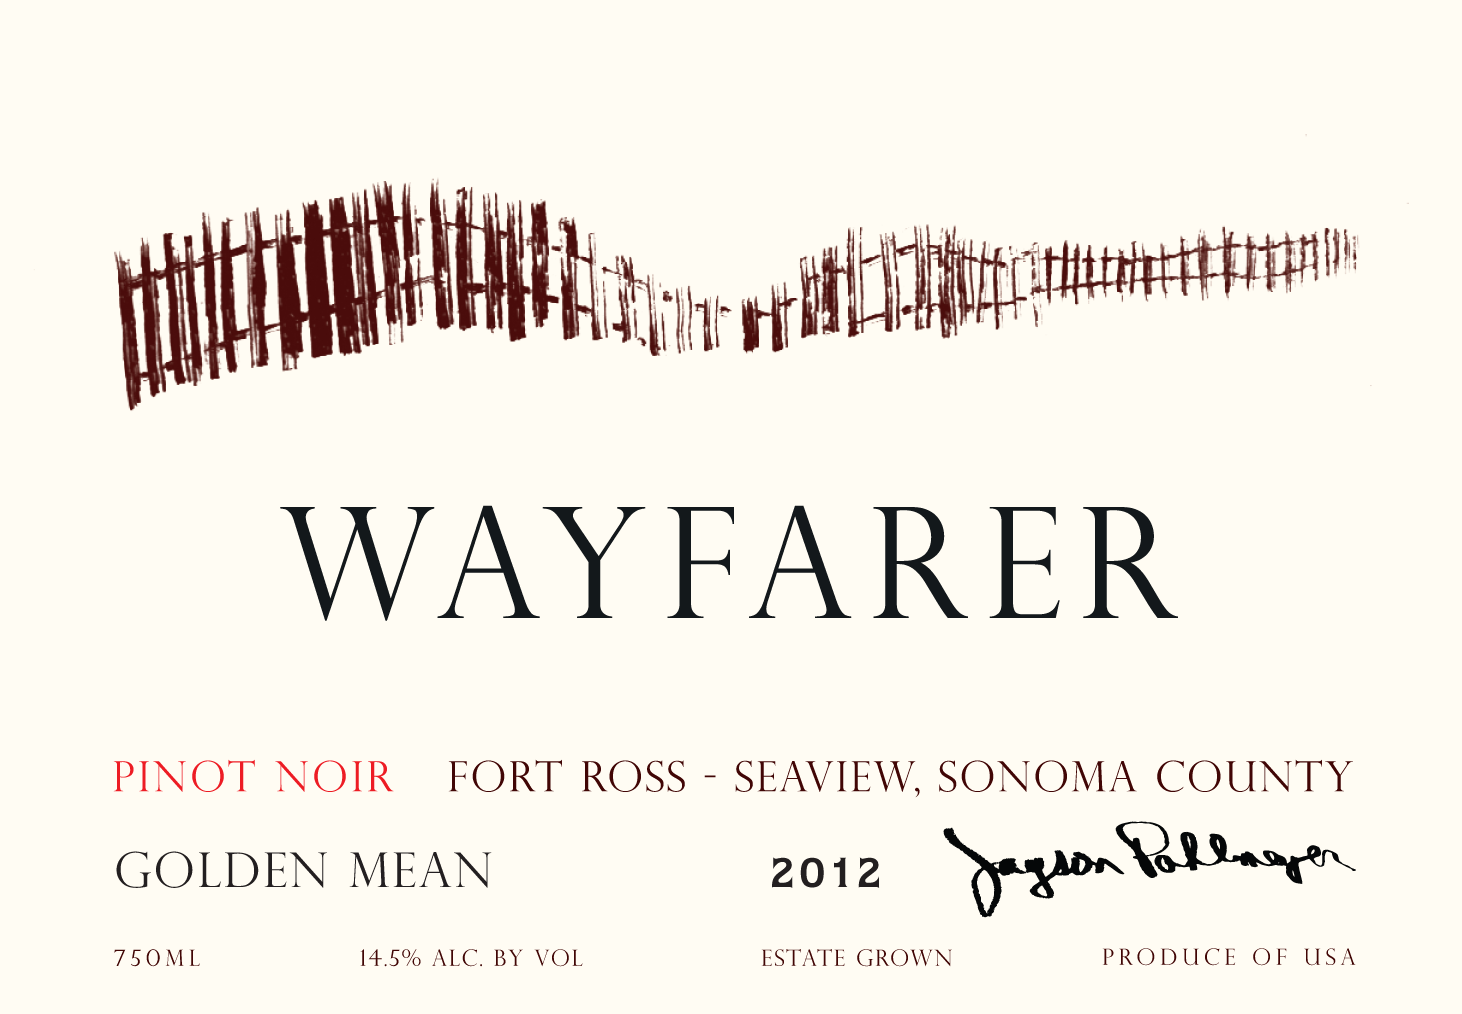 2019 Wayfarer Pinot Noir Golden Mean Fort Ross-Seaview Sonoma image